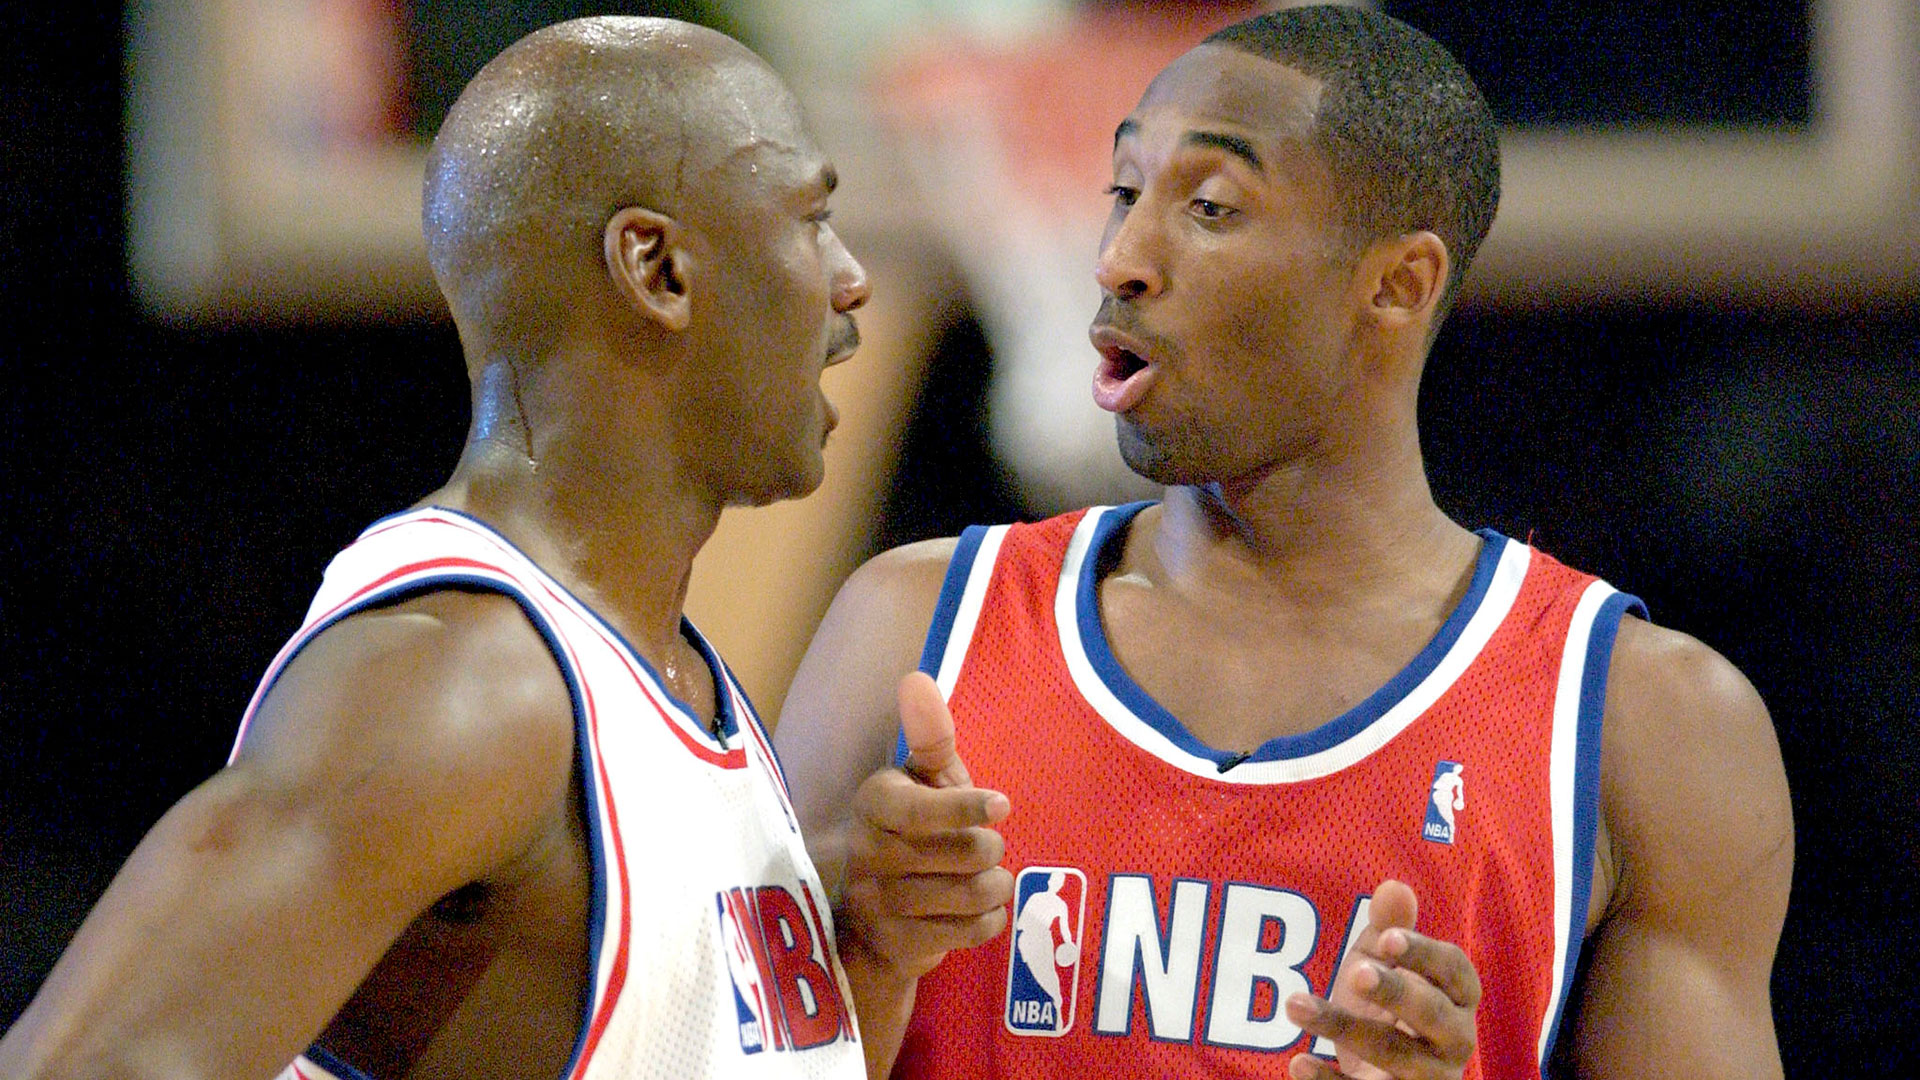 “No puedo borrarlos”: Michael Jordan reveló sus últimos mensajes de texto con Kobe Bryant antes del accidente fatal